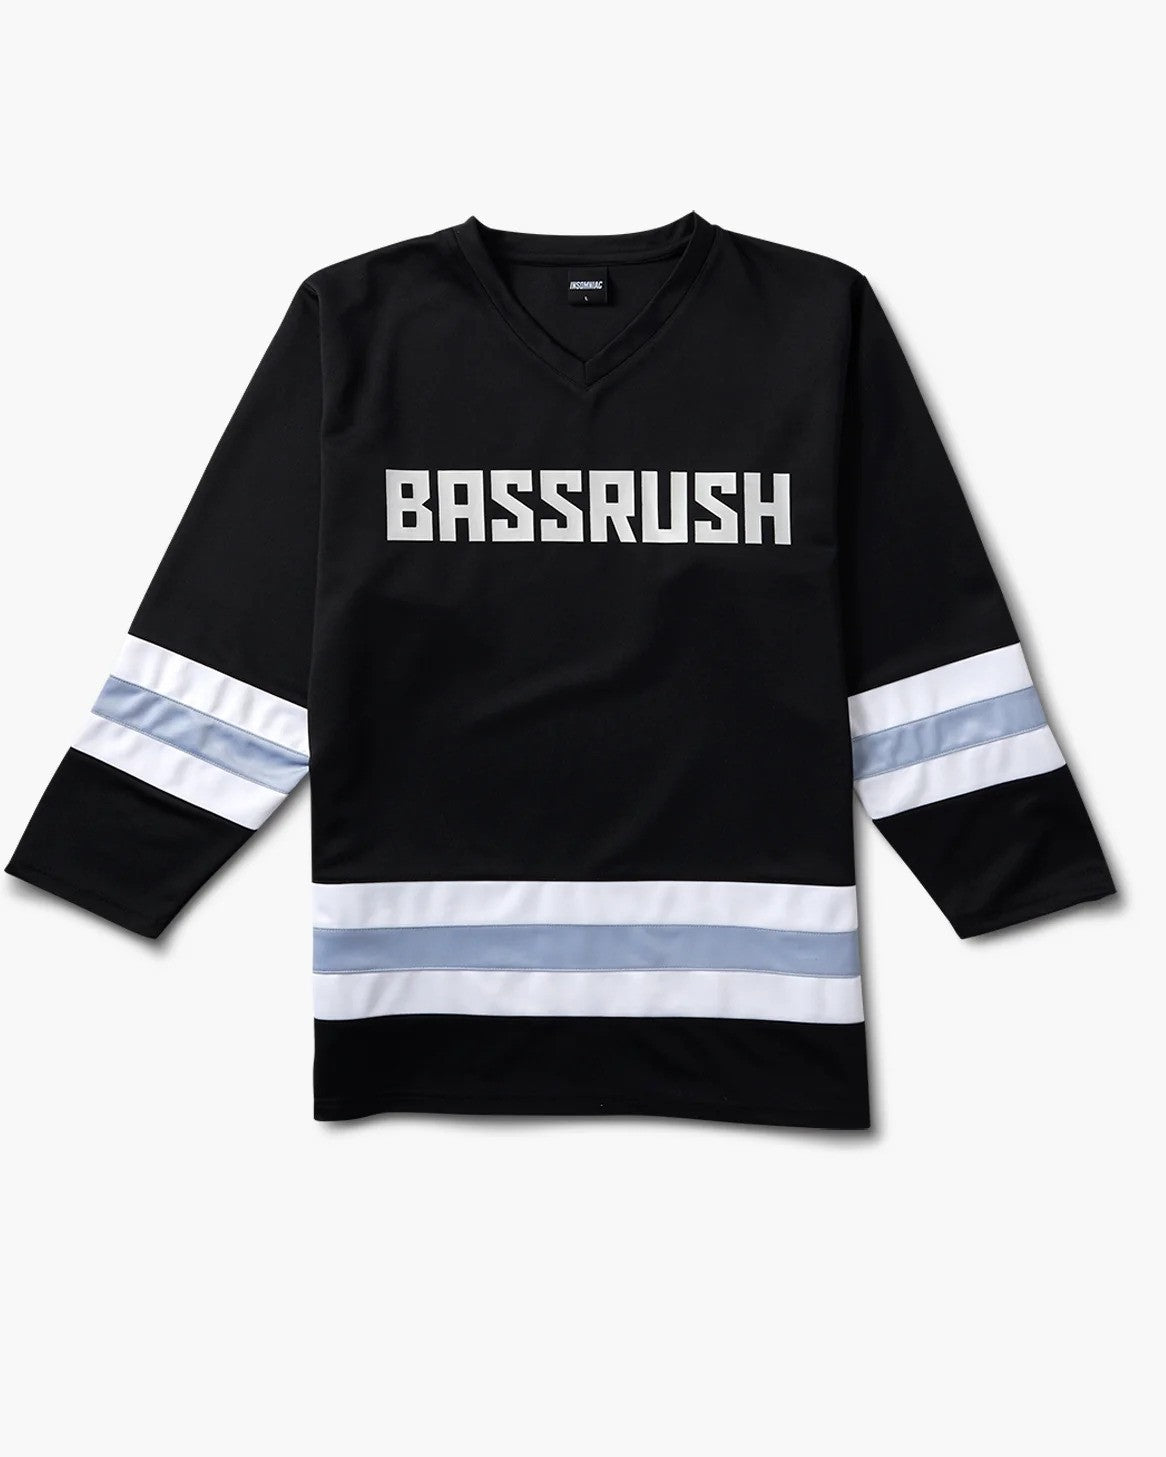 Insomniac Bassrush Hockey Jersey